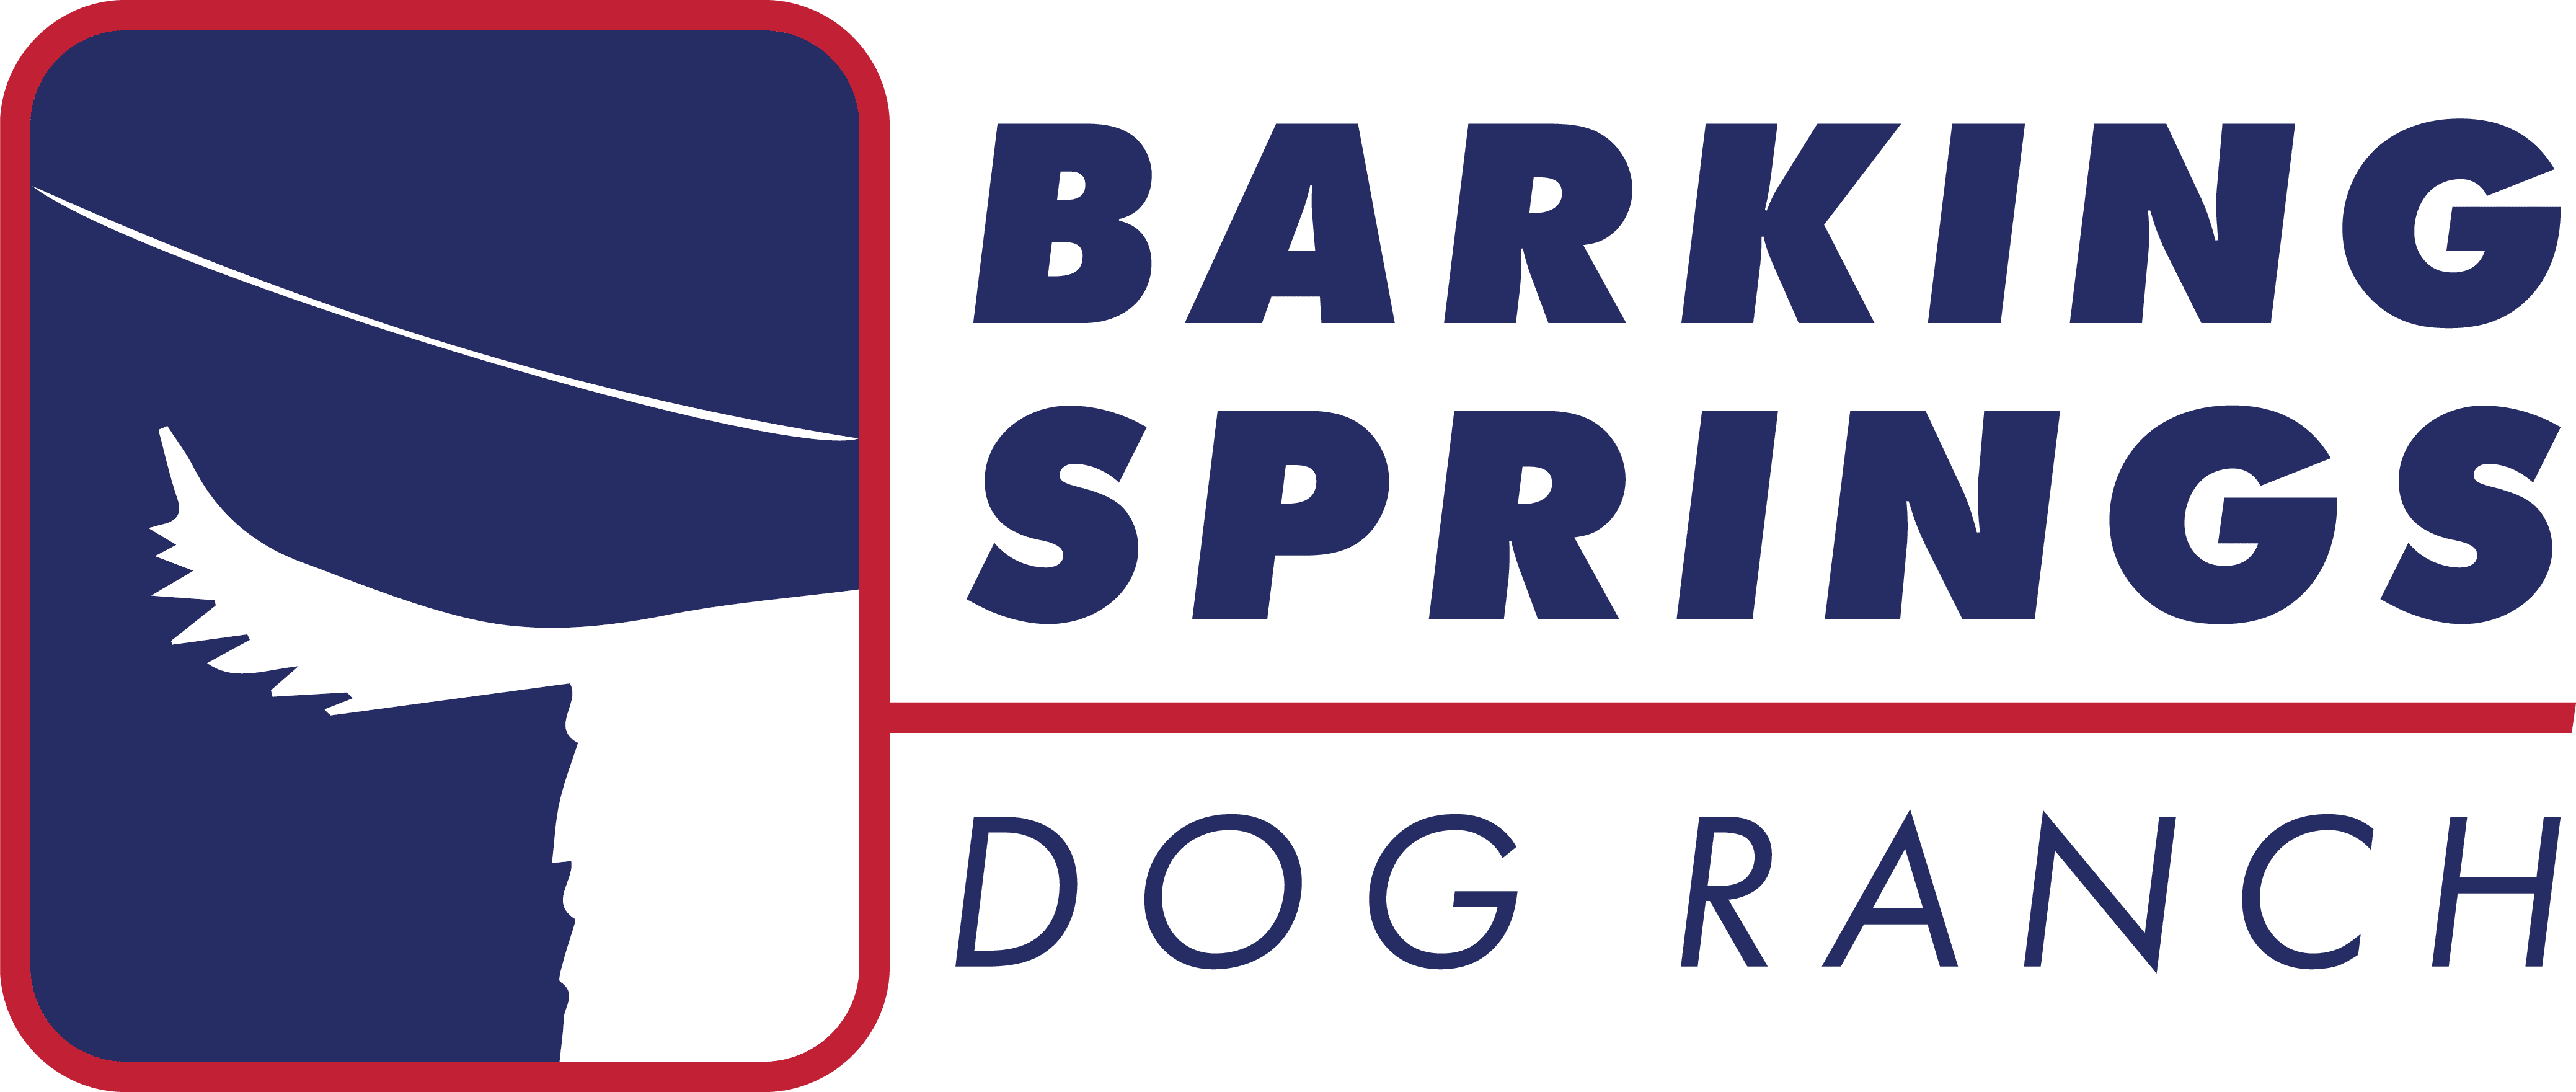 barking springs logo white butt